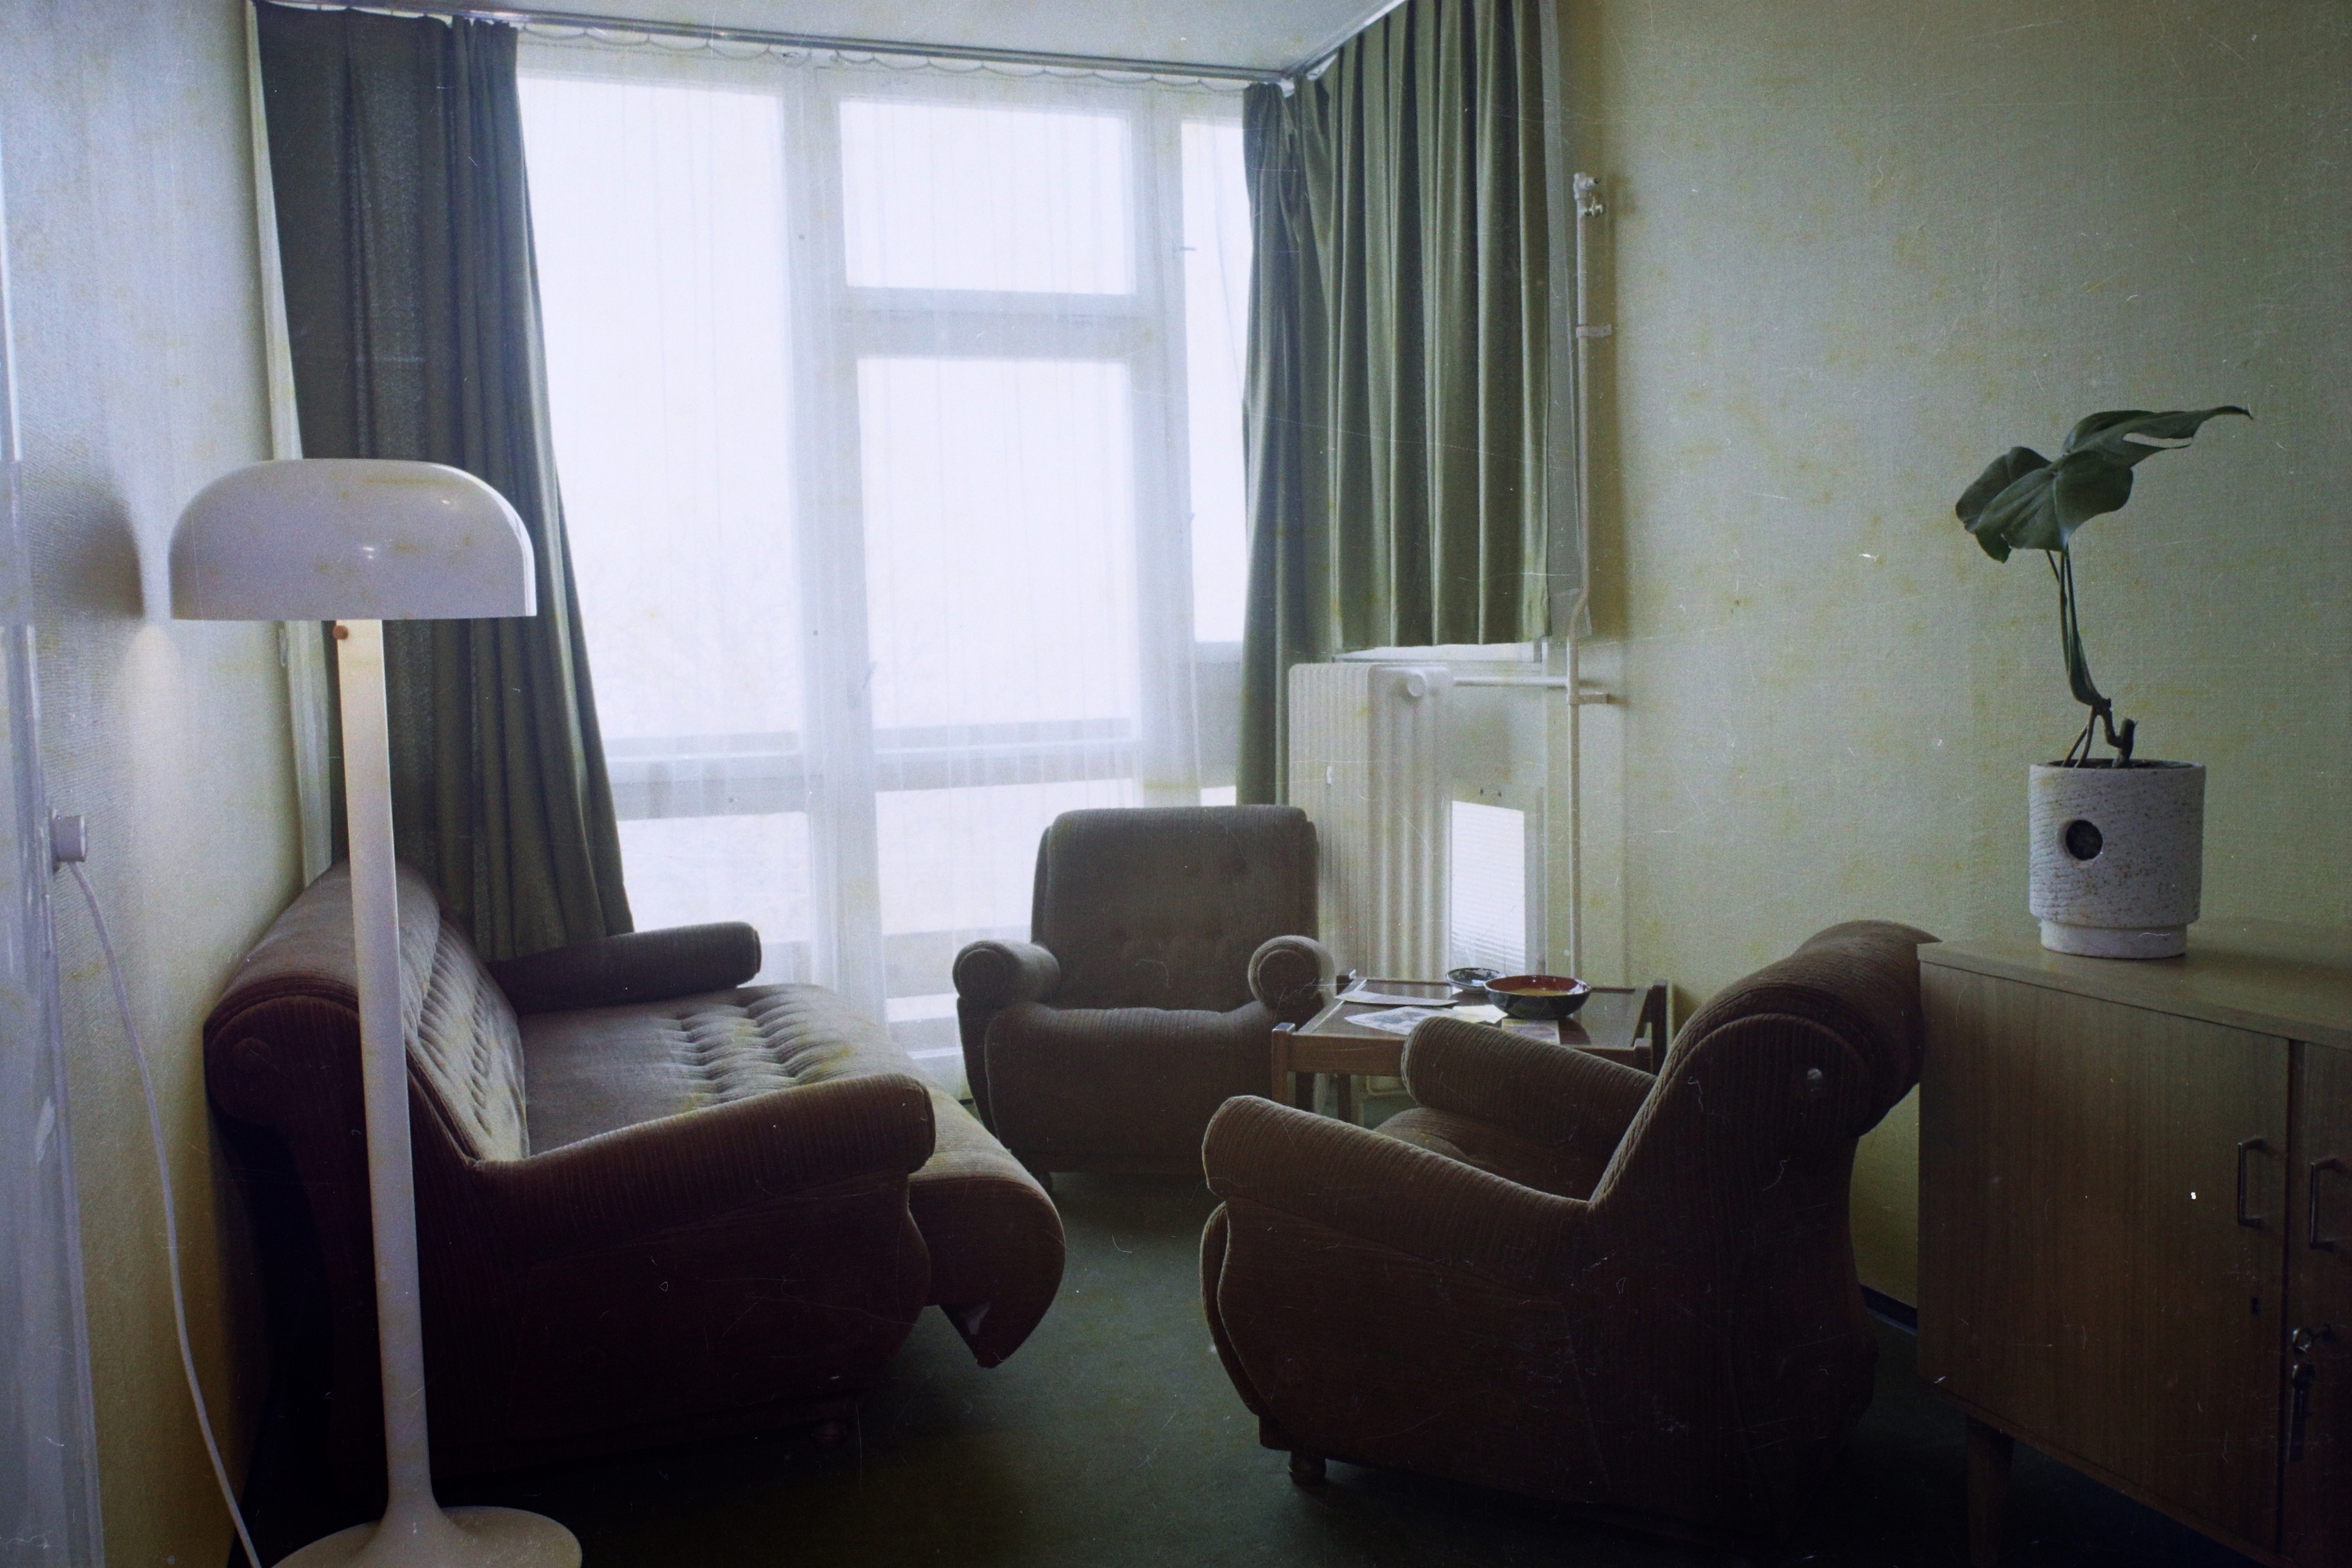 Eötvös út 40., a Hotel Olimpia egyik szobája, 1974. Forrás: Fortepan / Bauer Sándor